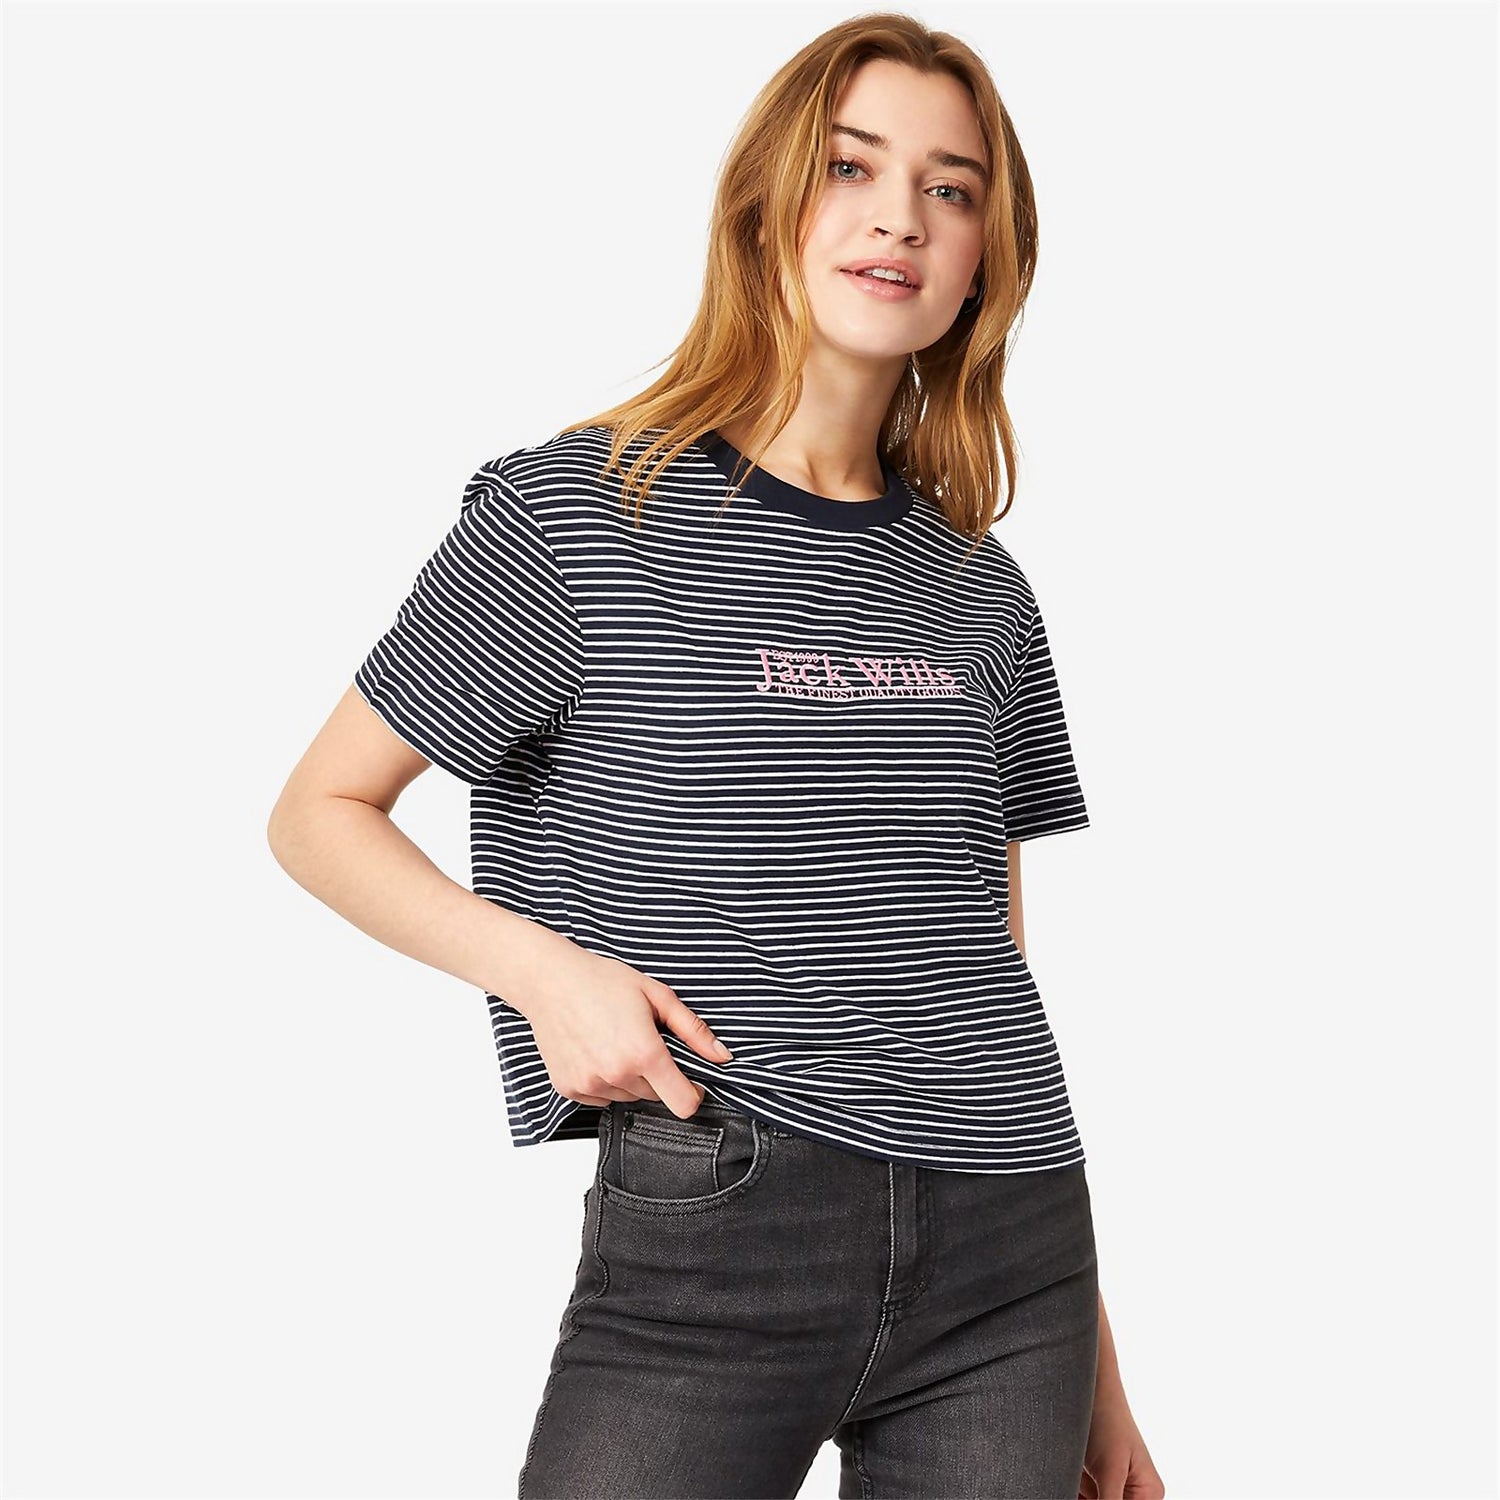 Milsom Boxy T-Shirt - Navy Stripe